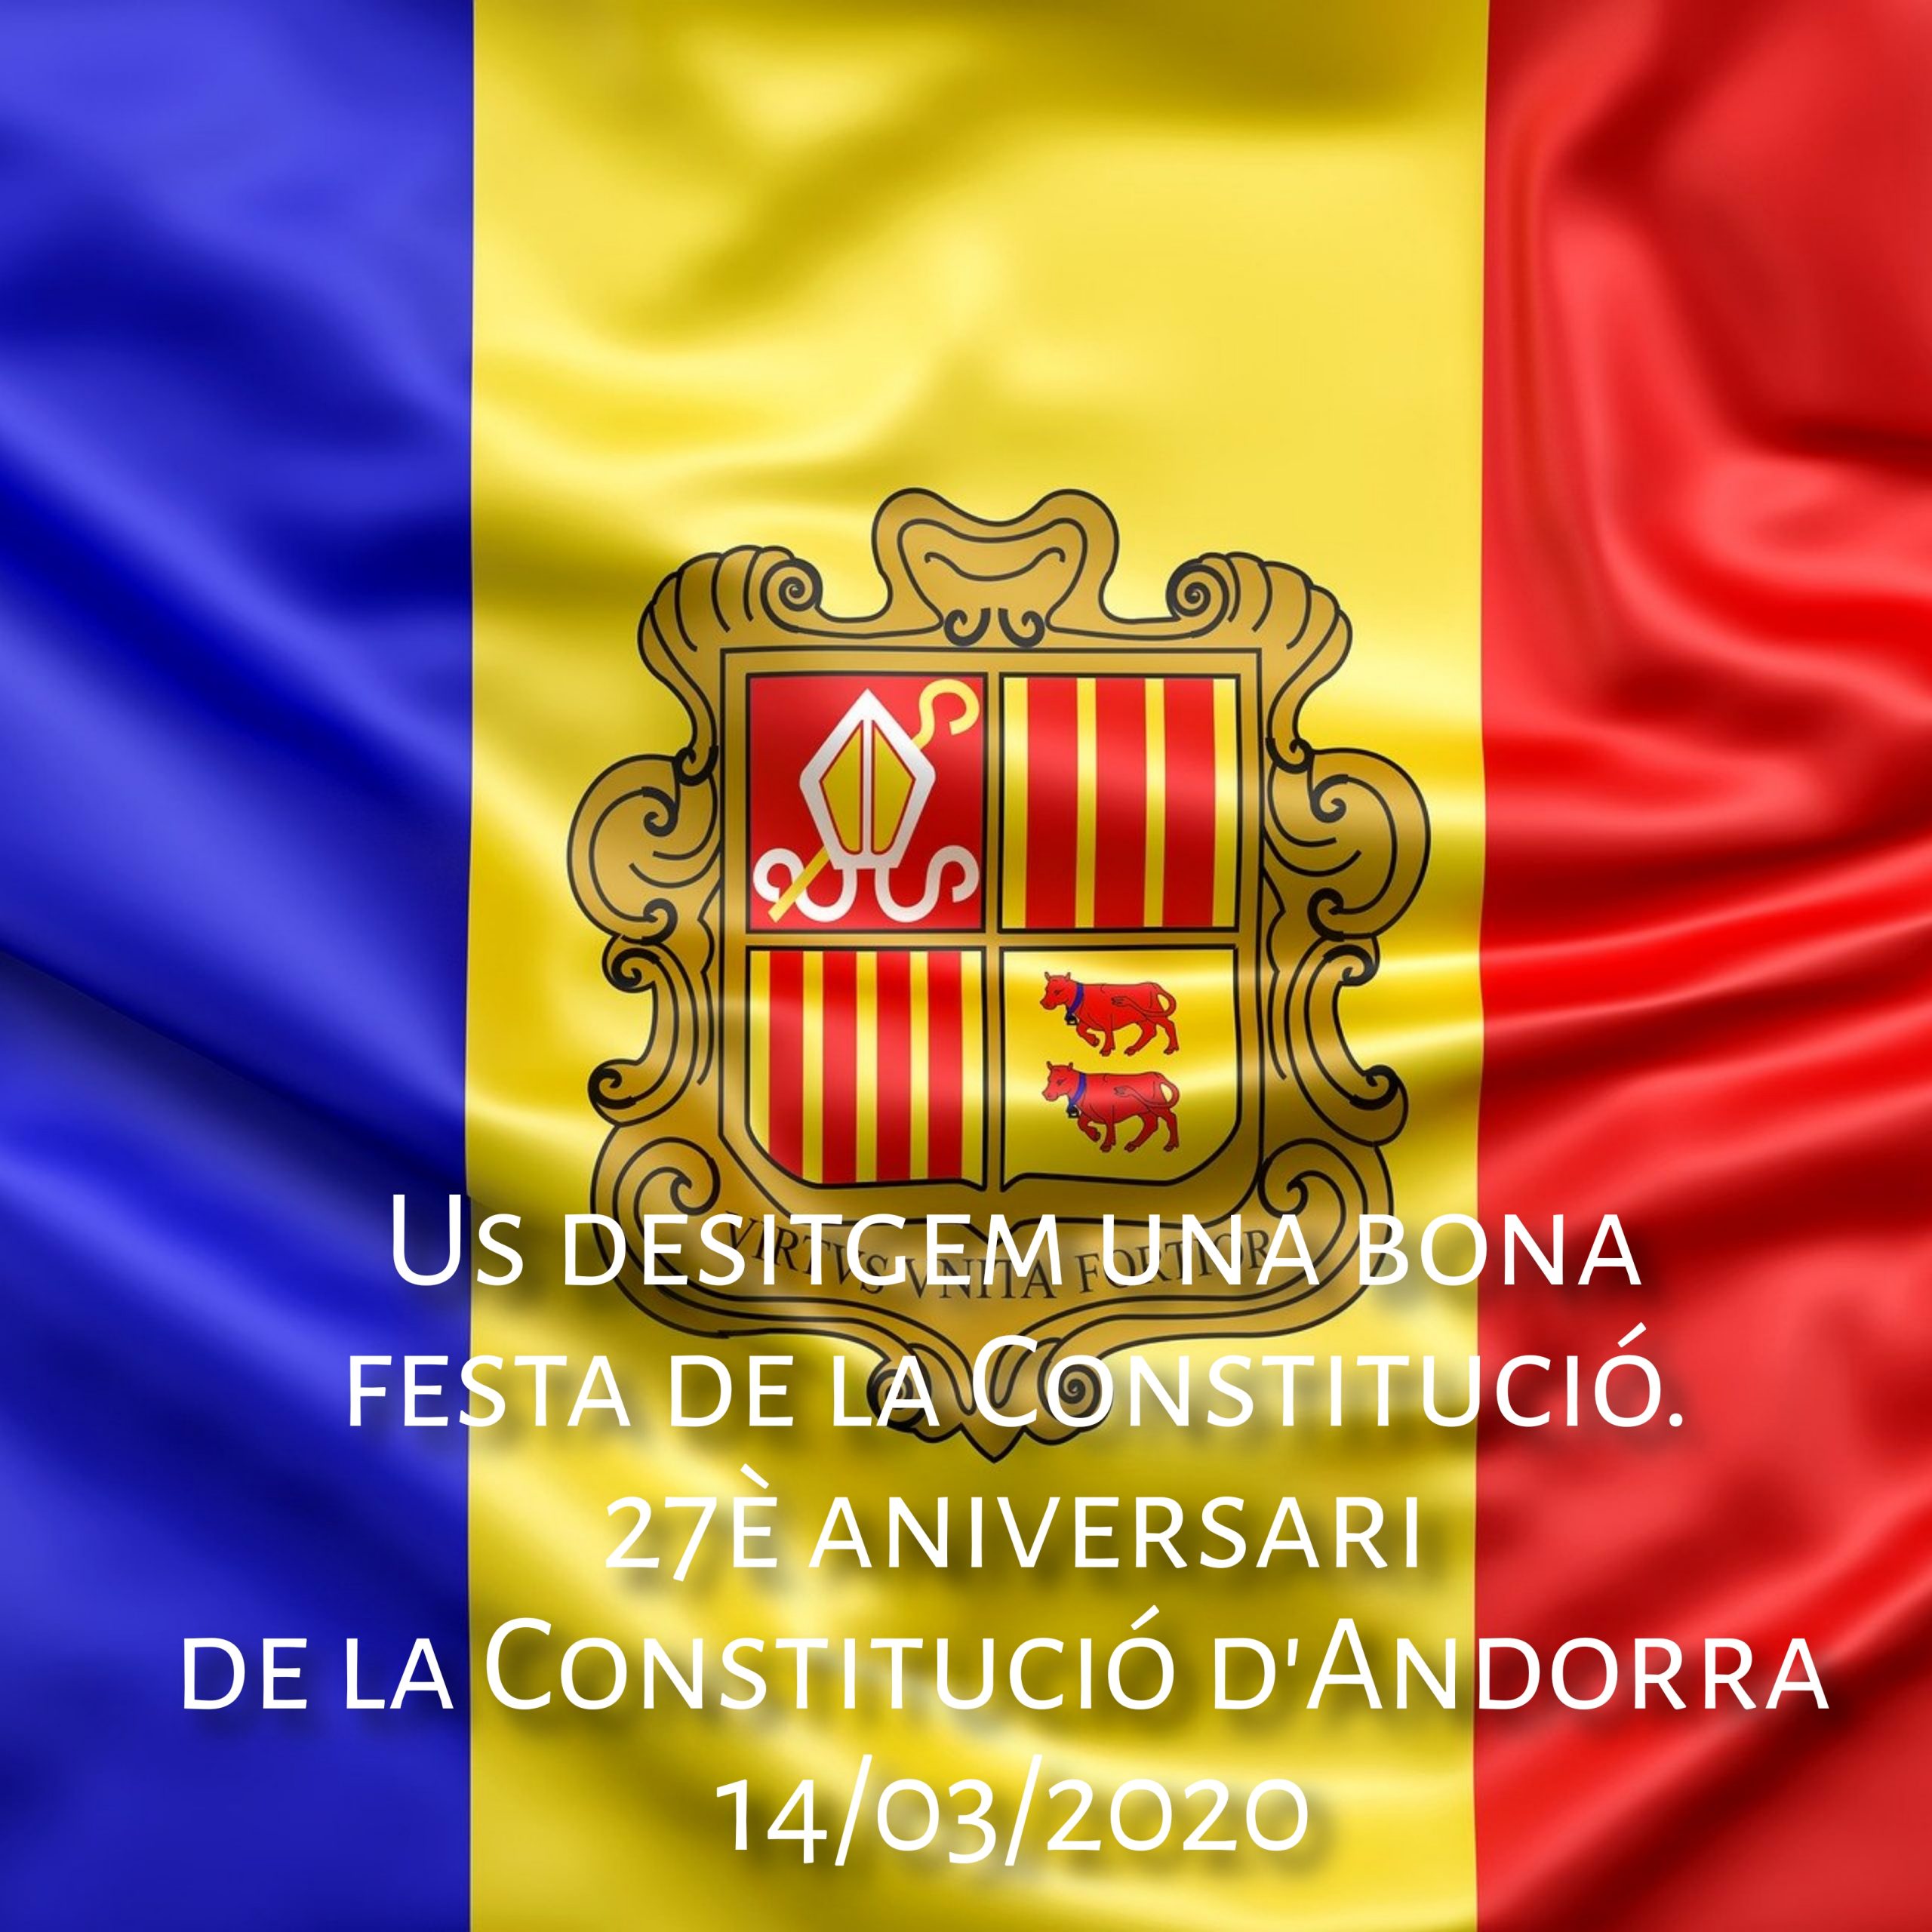 Volem desitjar-vos un feliç dia de la constitució d Andorra 2020